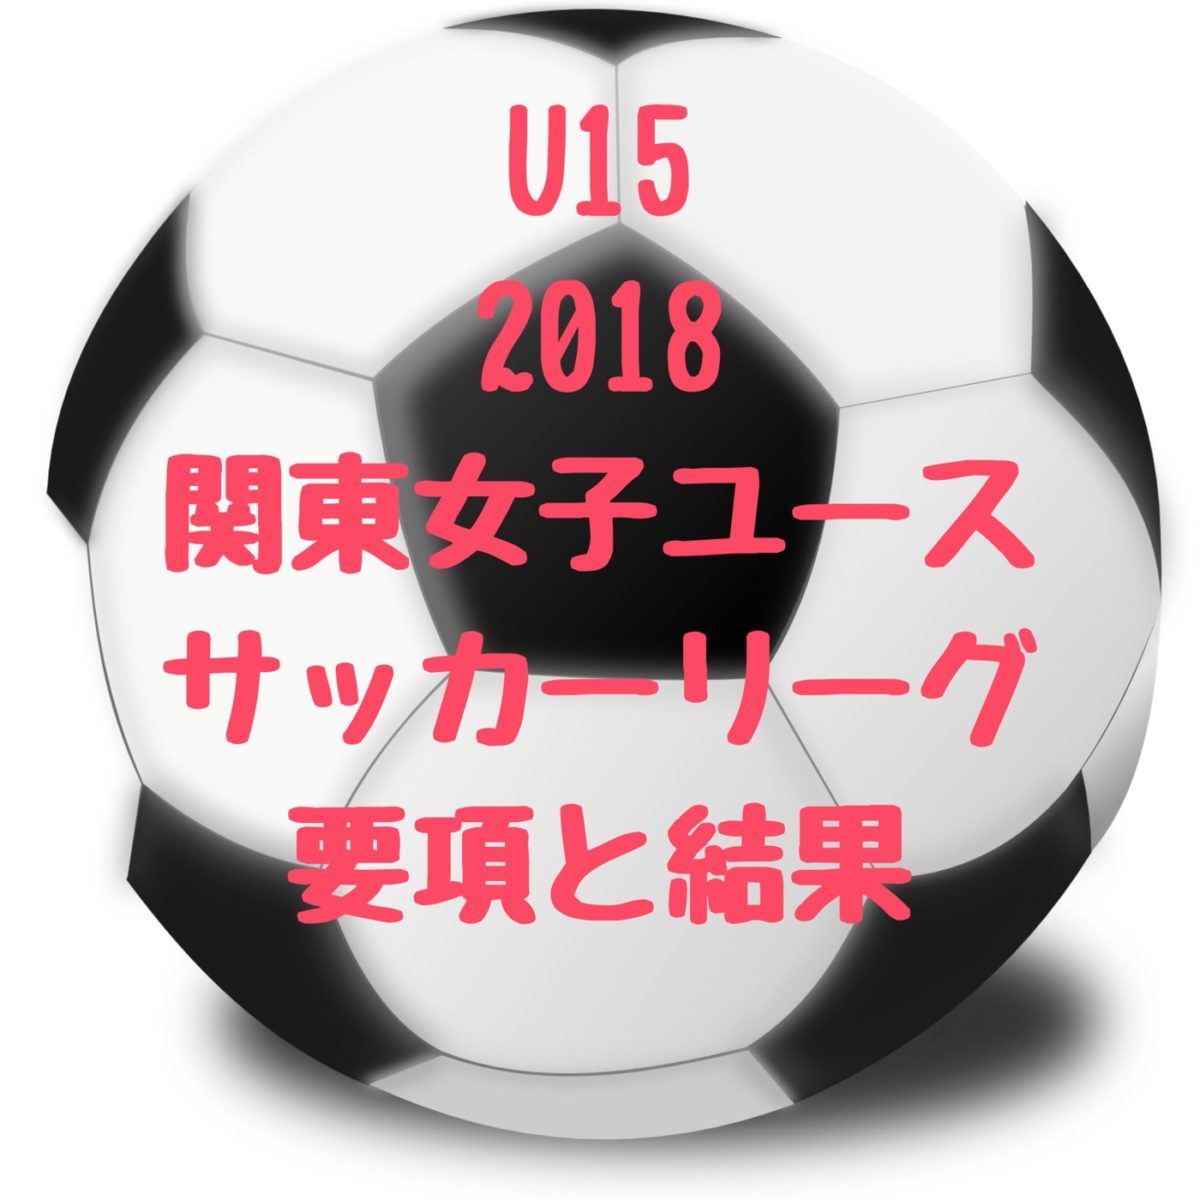 第2回 U15 関東女子サッカーリーグ 18年度版 要項と最終順位